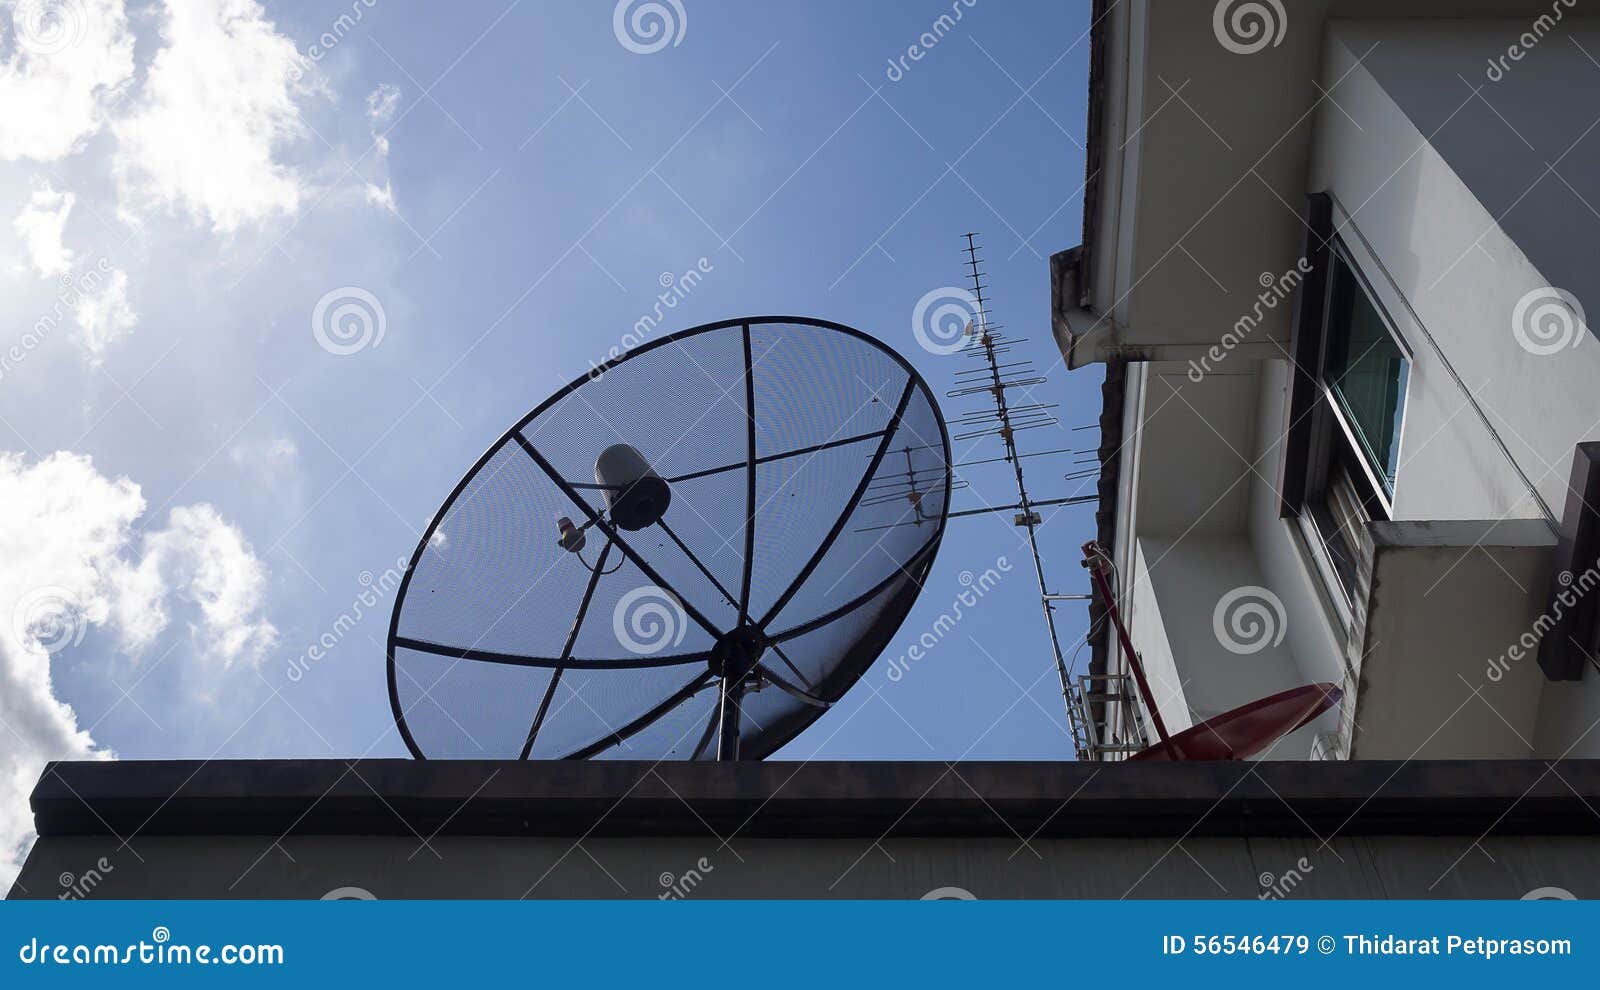 TV Grande Y Torre De Radio Con Varias Antenas Parabólicas Y Equipo De  Comunicación Celular Tula, Rusia Imagen de archivo - Imagen de  comunicación, tula: 114420957